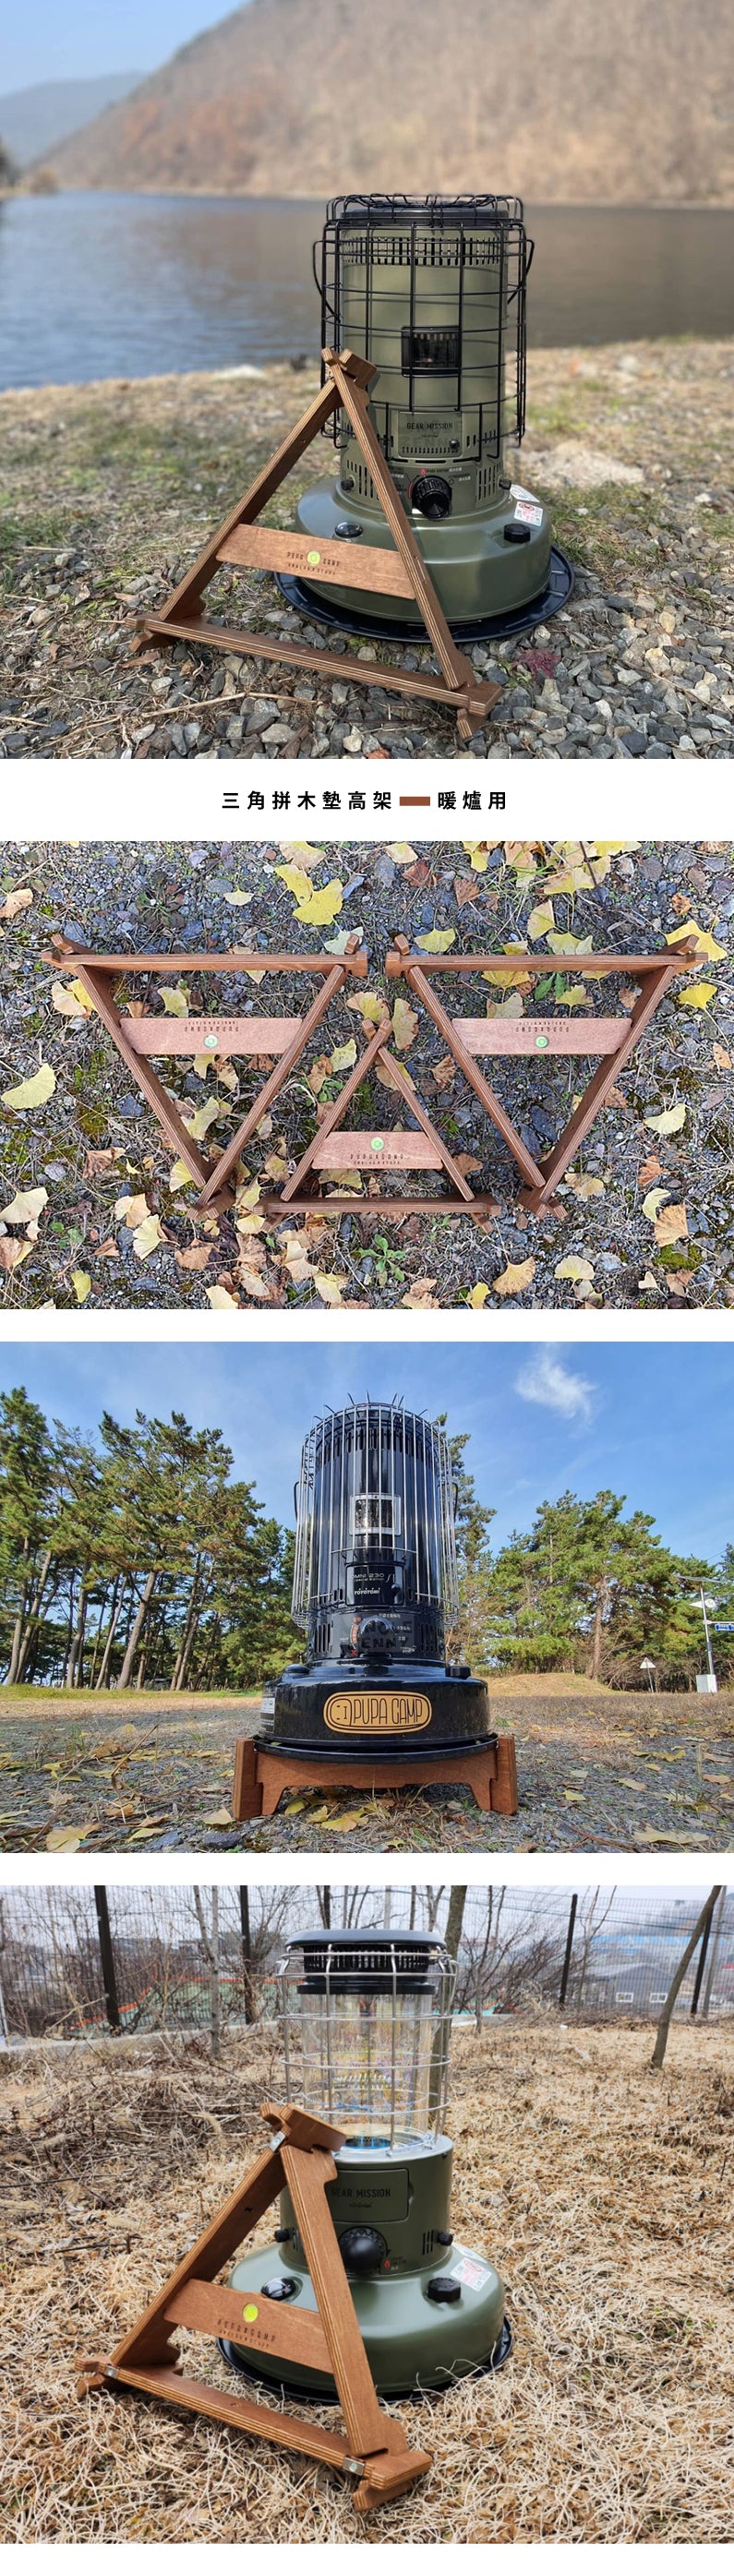 PUPACAMP • 三角拼木墊高架 • 暖爐用(4種尺寸選擇) - 可拆卸收納，附收納袋